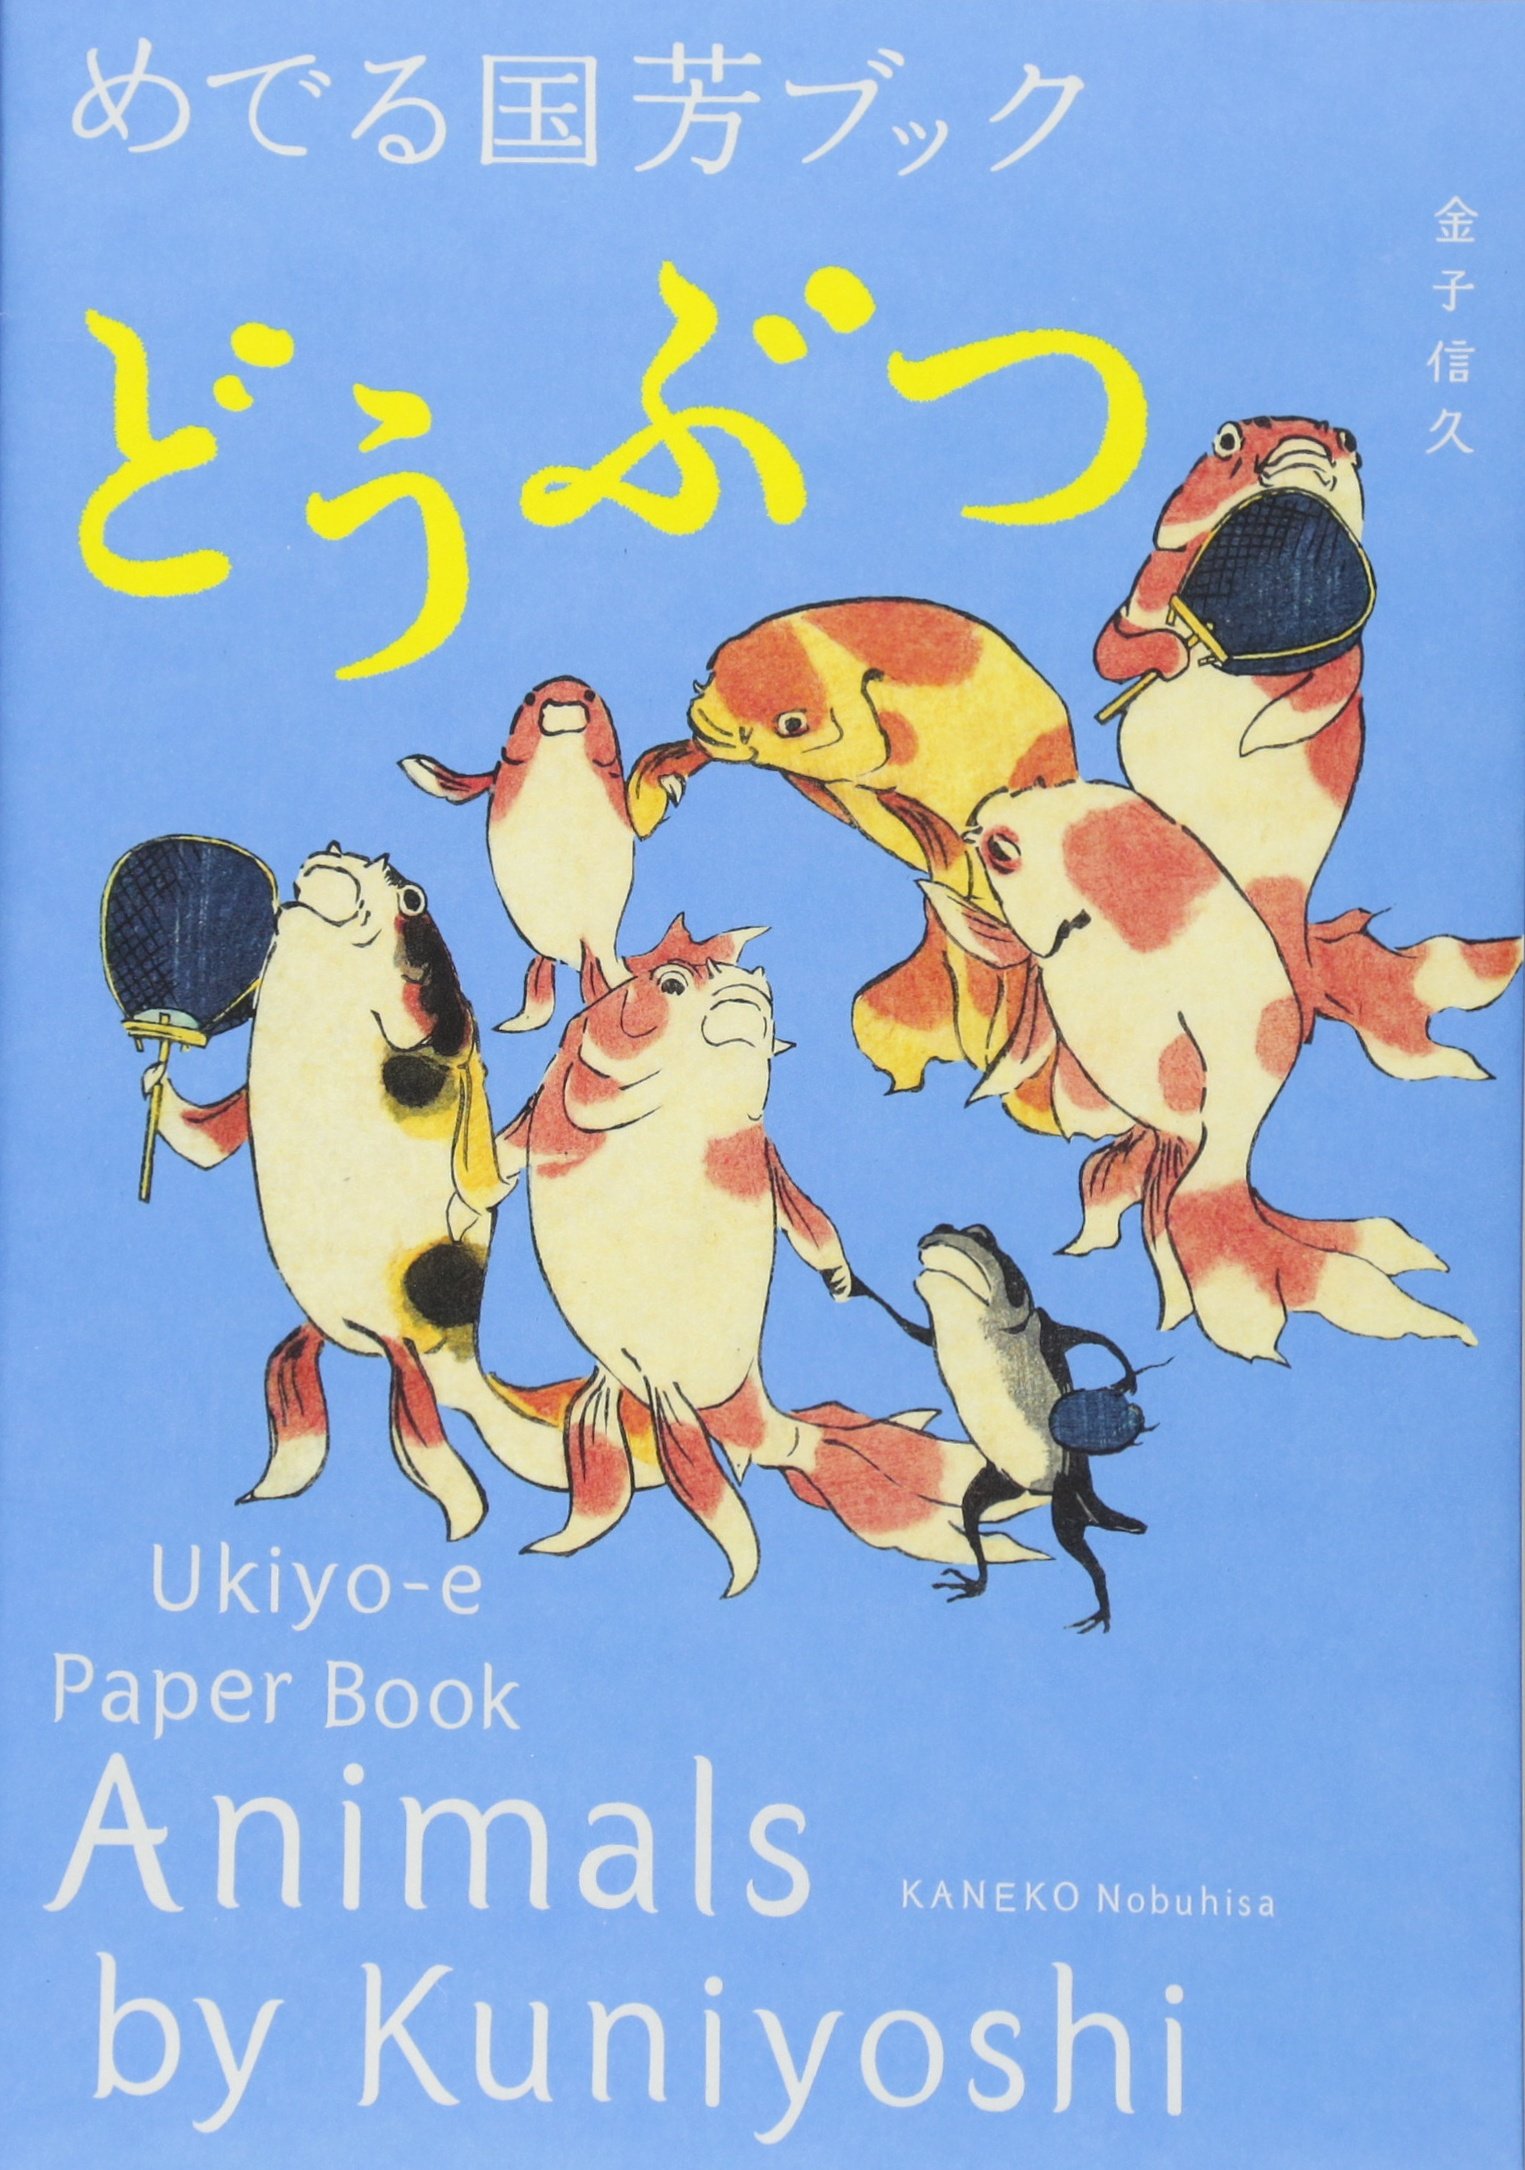 Animals by Kuniyoshi - Ukiyo-E Paper Book | Kuniyoshi Utagawa